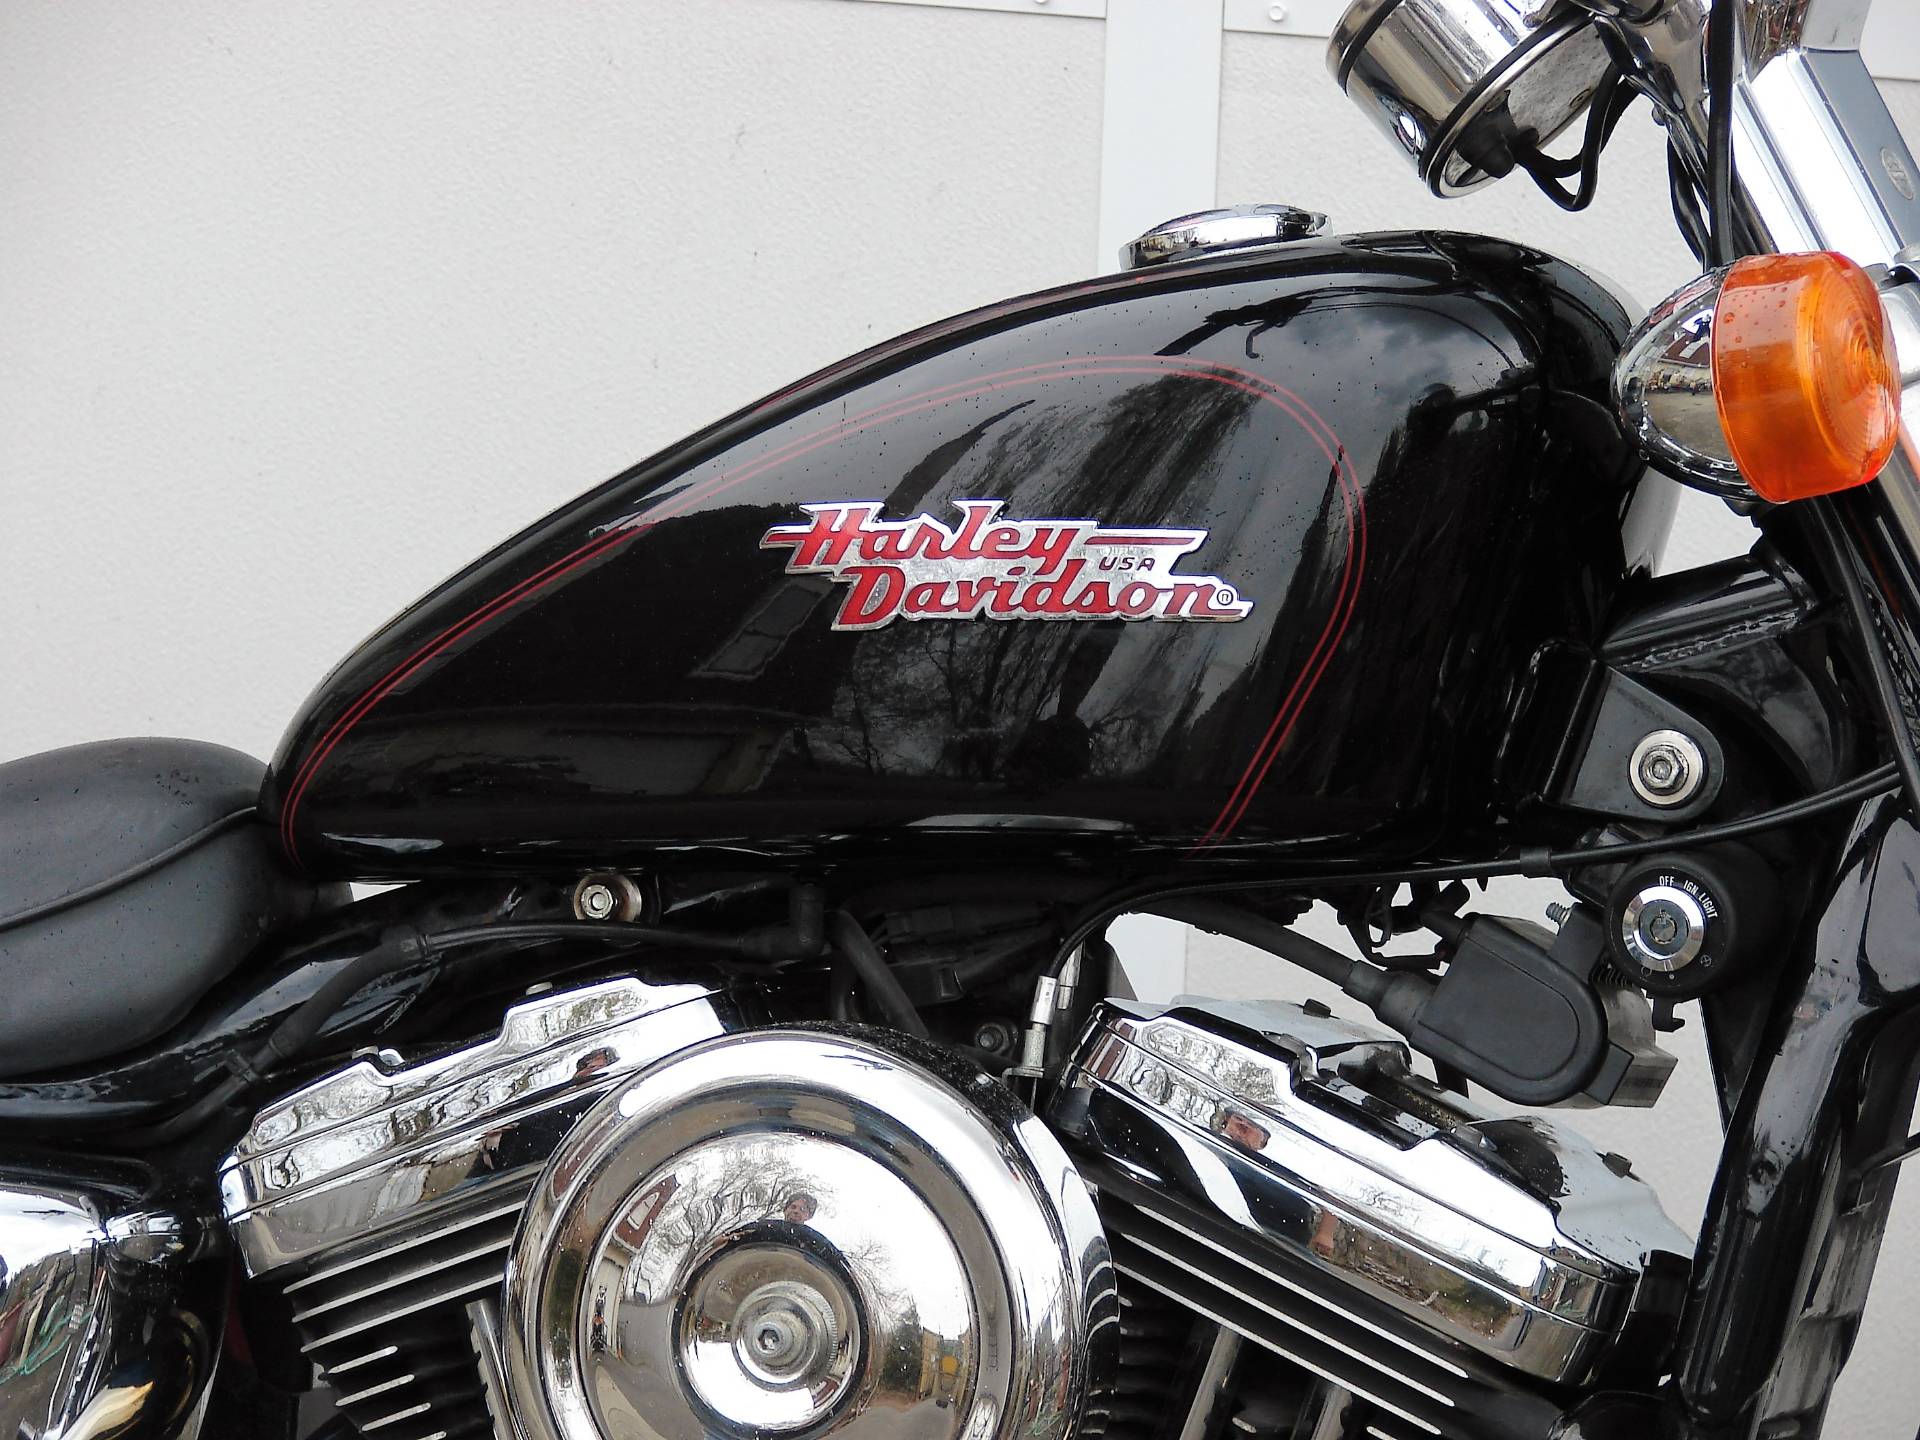 KR Gabelsimmeringe Harley Davidson XL 1200 C Sportster Custom  96-14 